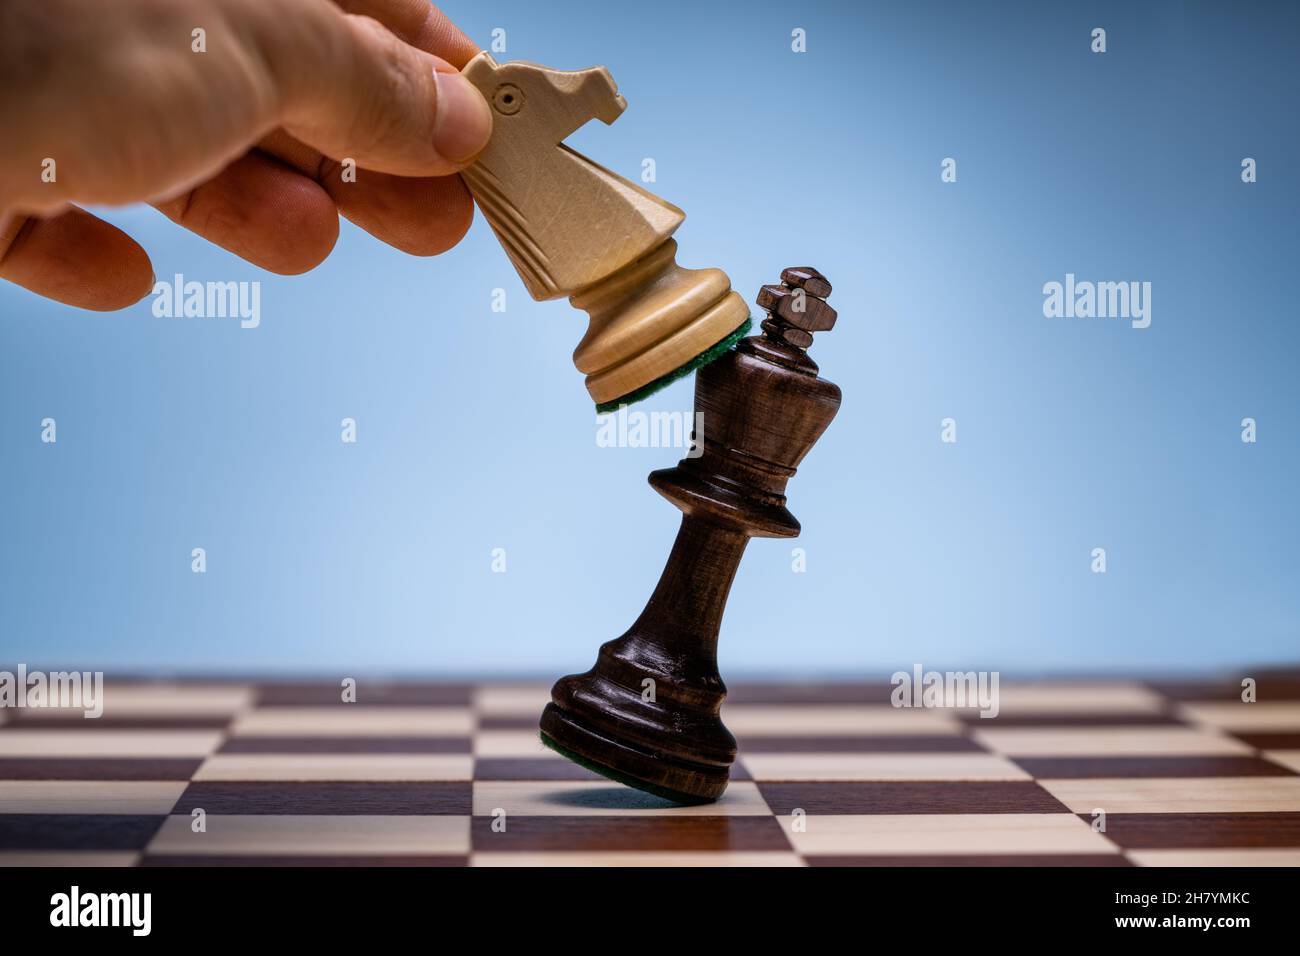 Schach Spieler einen zu besiegen König Stück bewegen Stockfoto